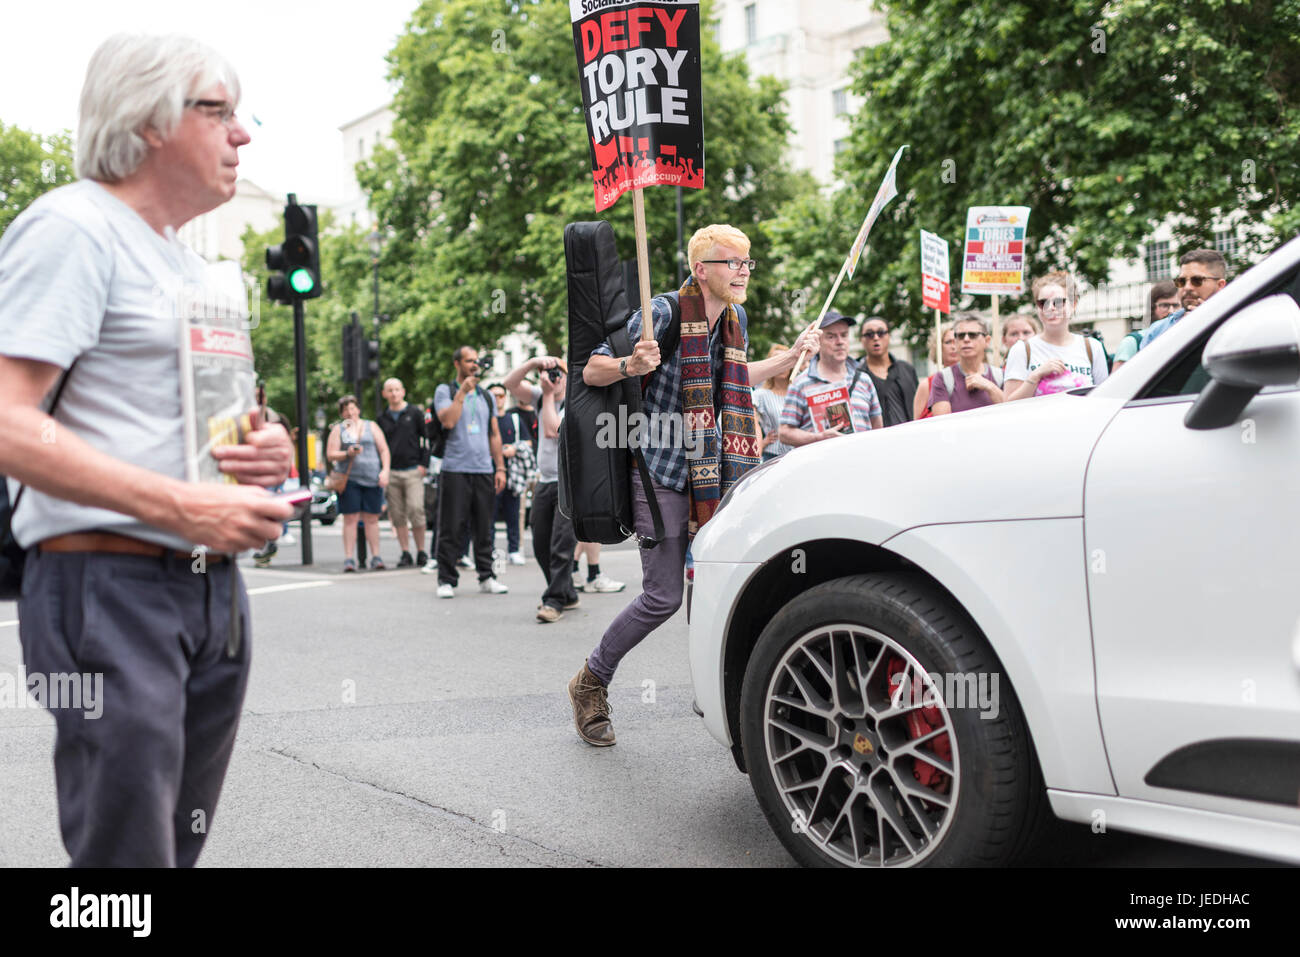 Londres, Reino Unido, 24 de junio de 2017. Los jóvenes protesta frente a Downing Street contra el Gobierno Tory que está tratando de crear una alianza con el DUP. Un manifestante se levanta delante de un coche. Foto de stock